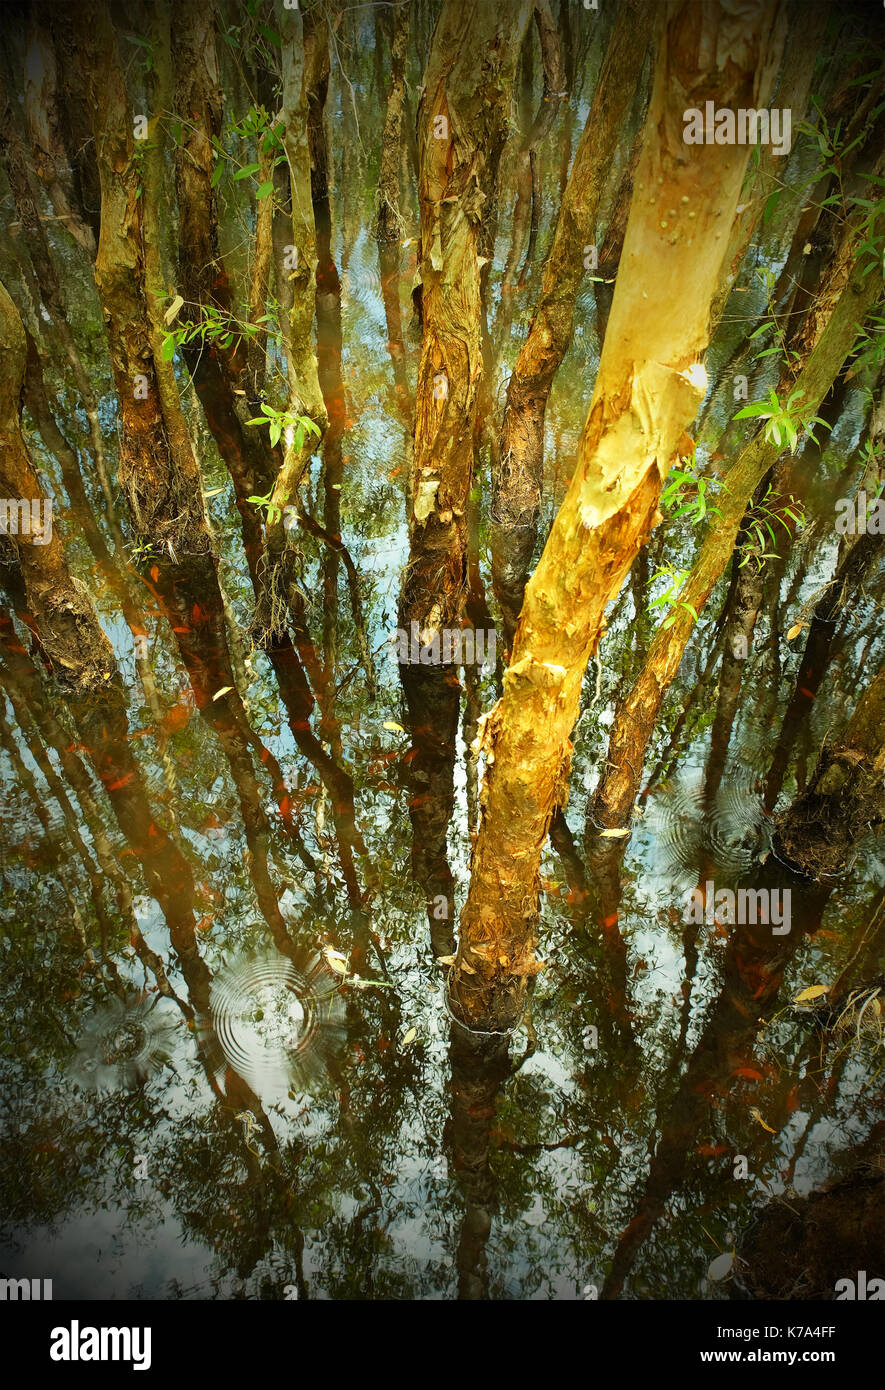 Paysage d'automne en forêt avec les feuilles qui tombent dans l'eau rouge, tronc d'arbre refléter sur l'eau de surface de la rivière, de l'écologie pour les voyages au long de la jungle, Viêt Nam Banque D'Images